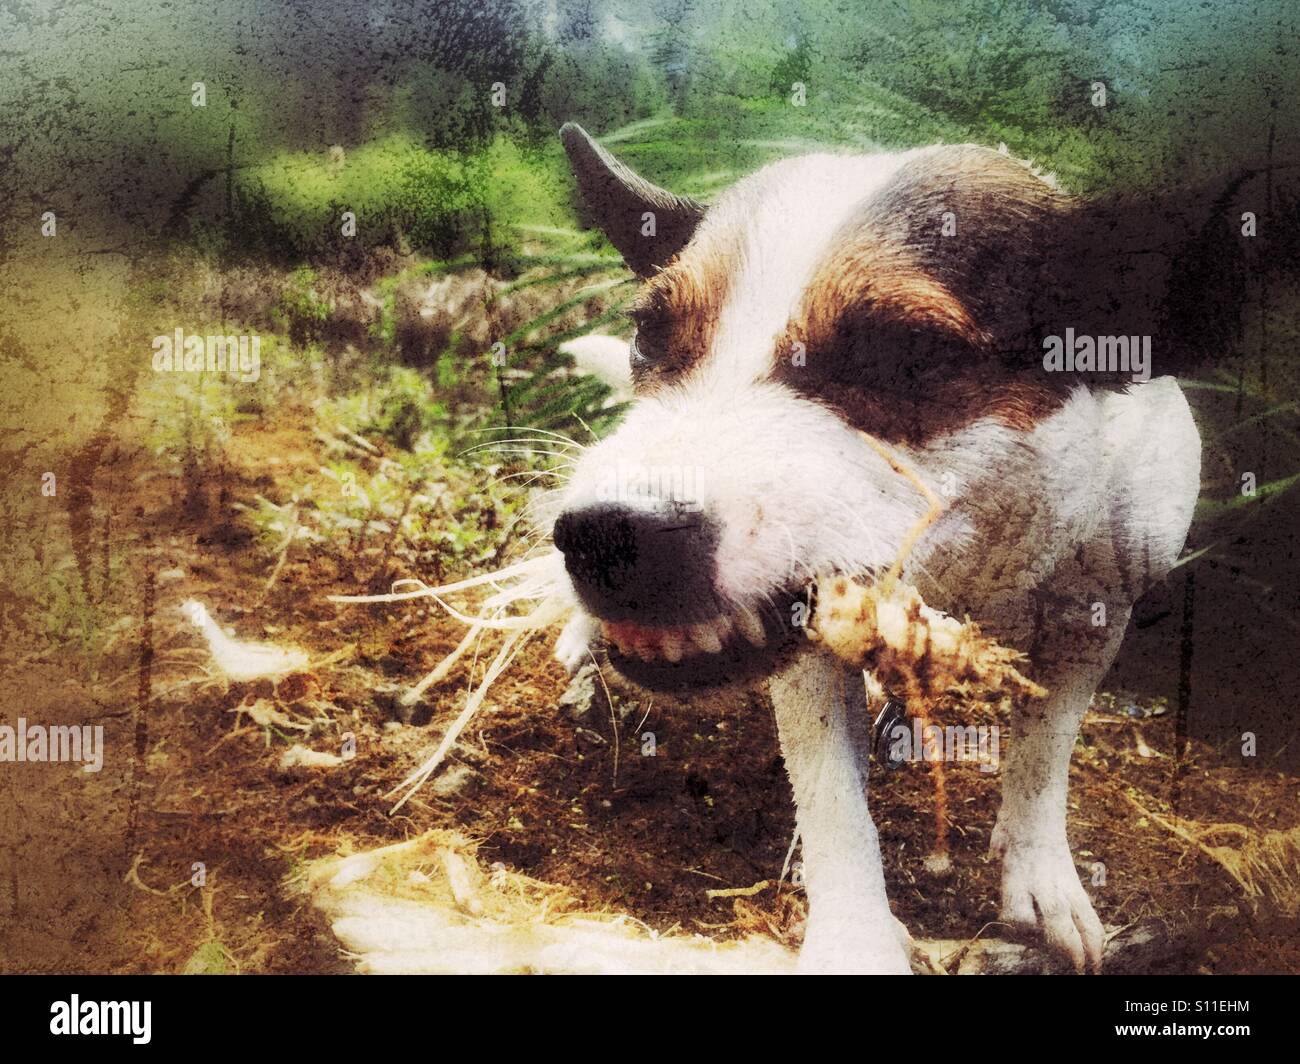 Hunde kauen auf einem Stick im Freien mit ihren scharfen Zähnen zeigt. Distressed bearbeiten. Stockfoto